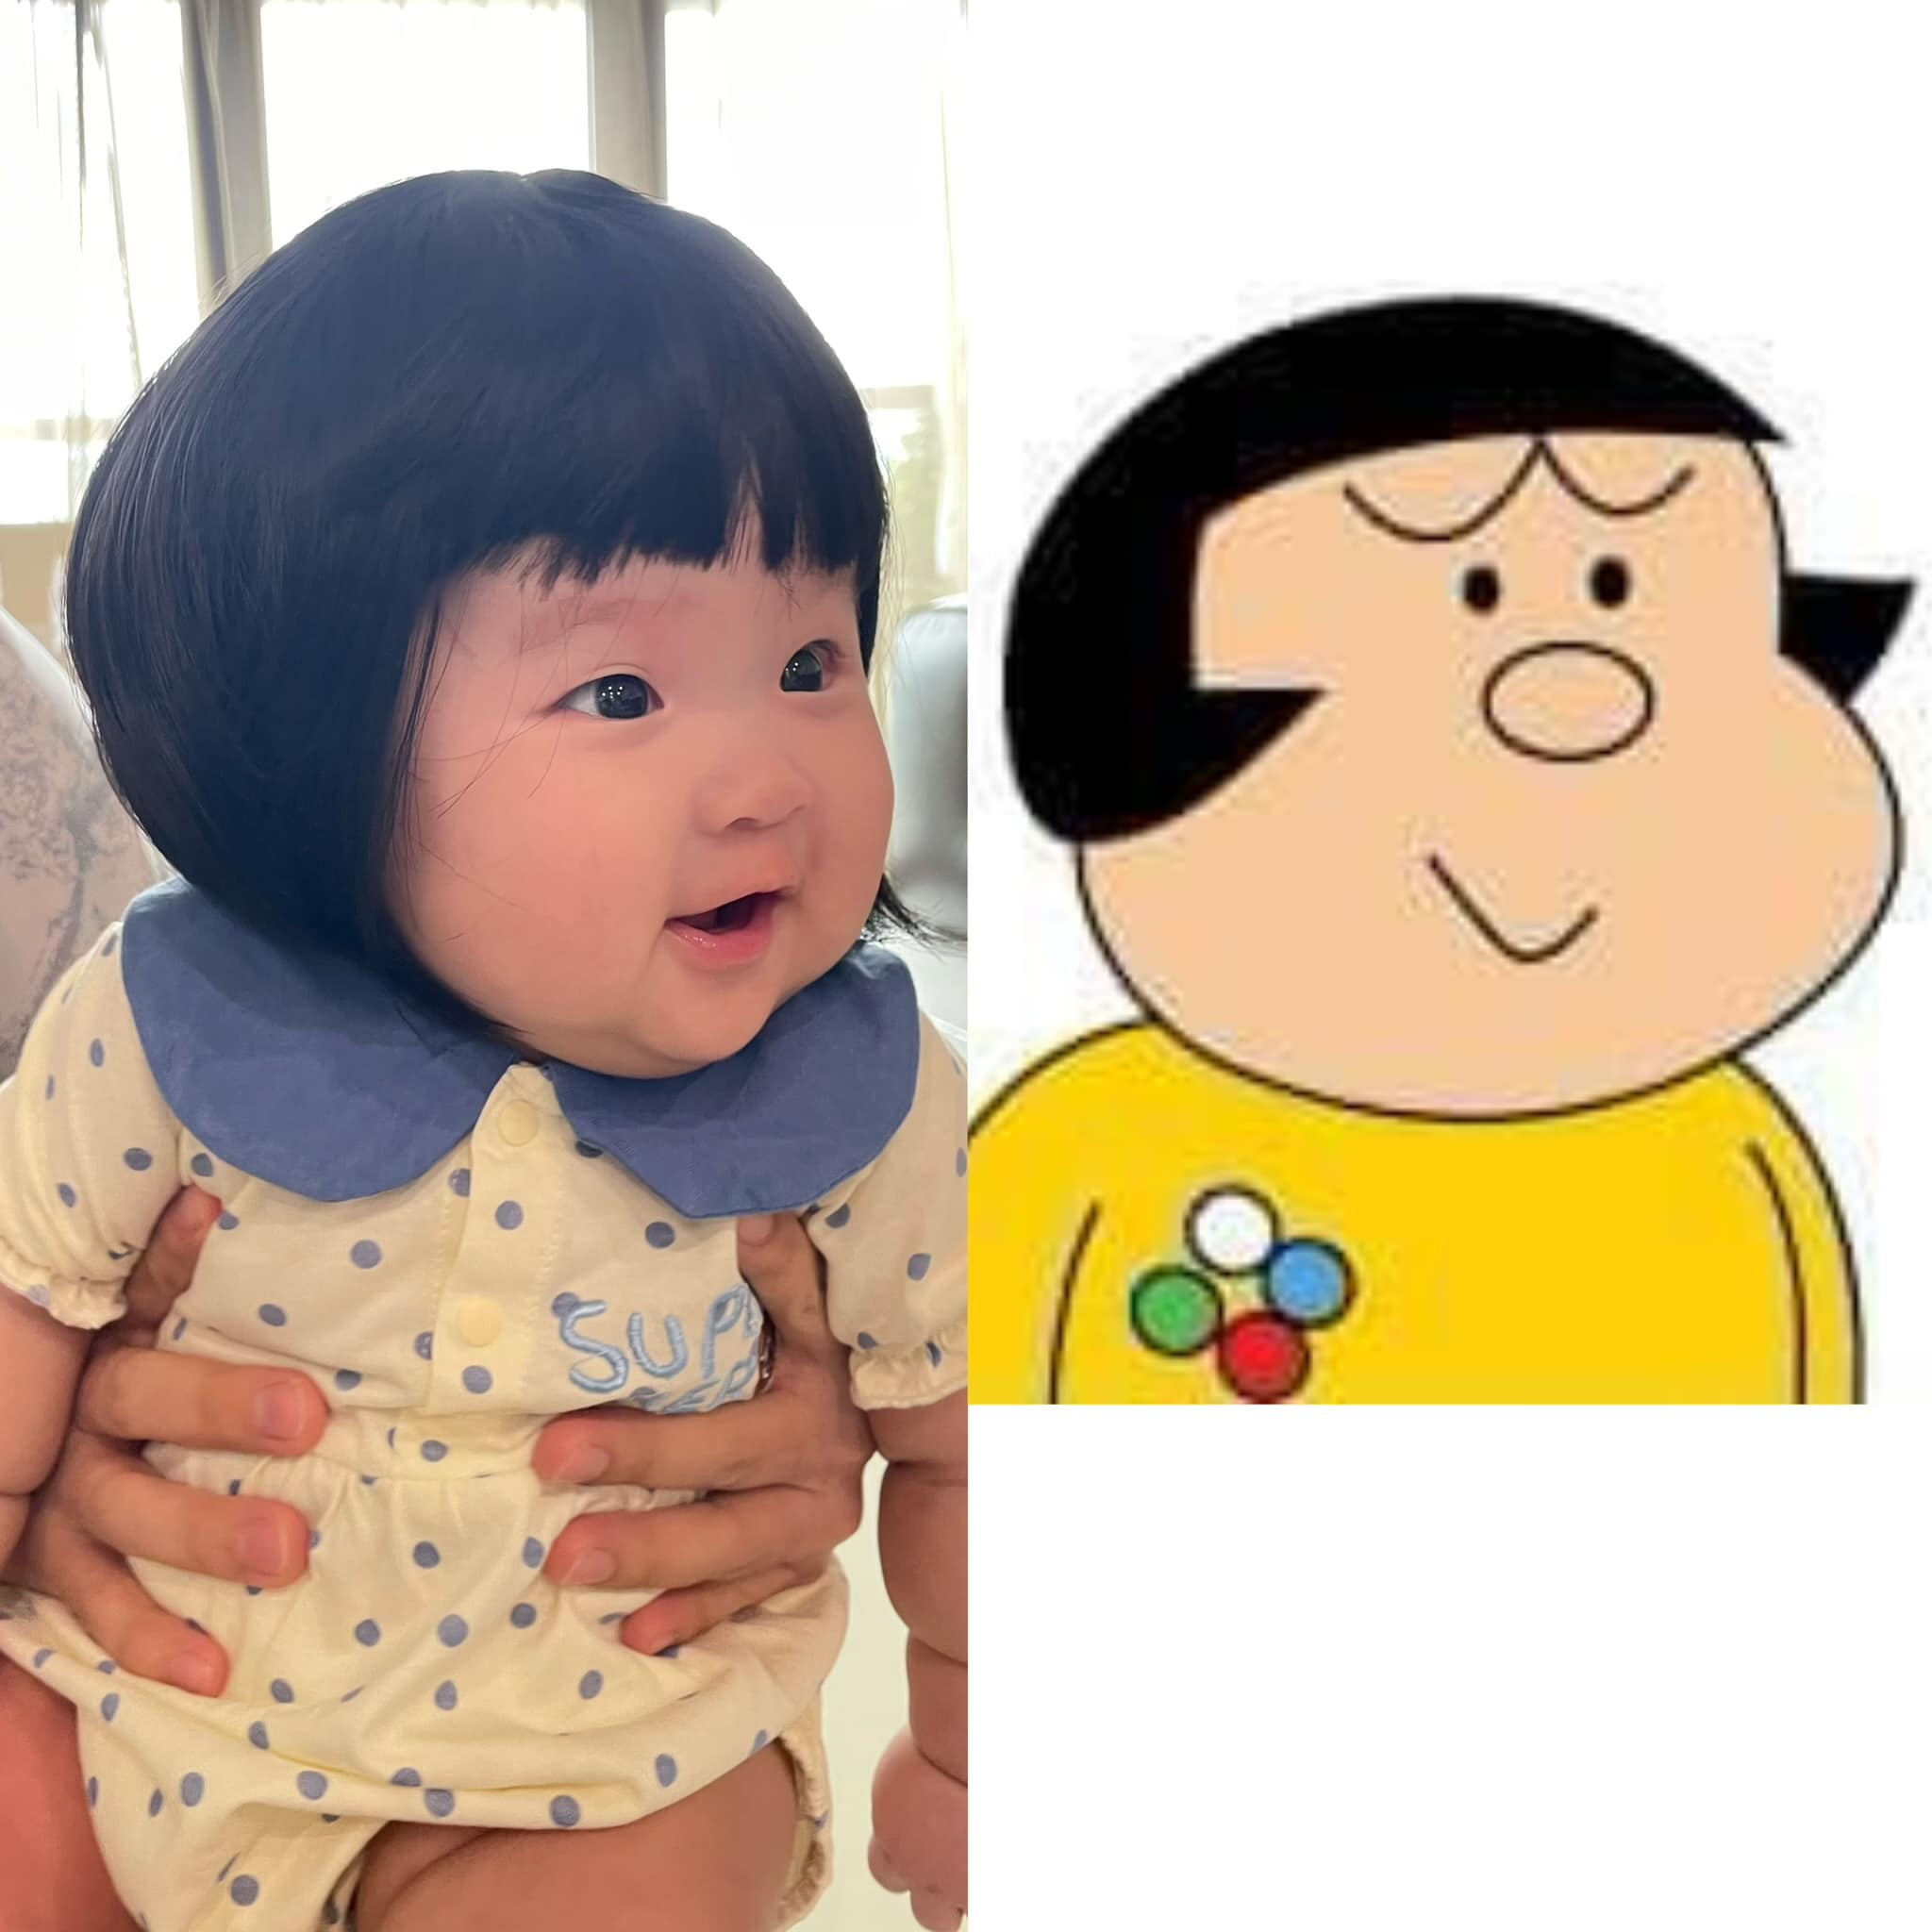 Sam ví von ái nữ trông giống nhân vật hoạt hình Chaiko trong phim Doraemon.